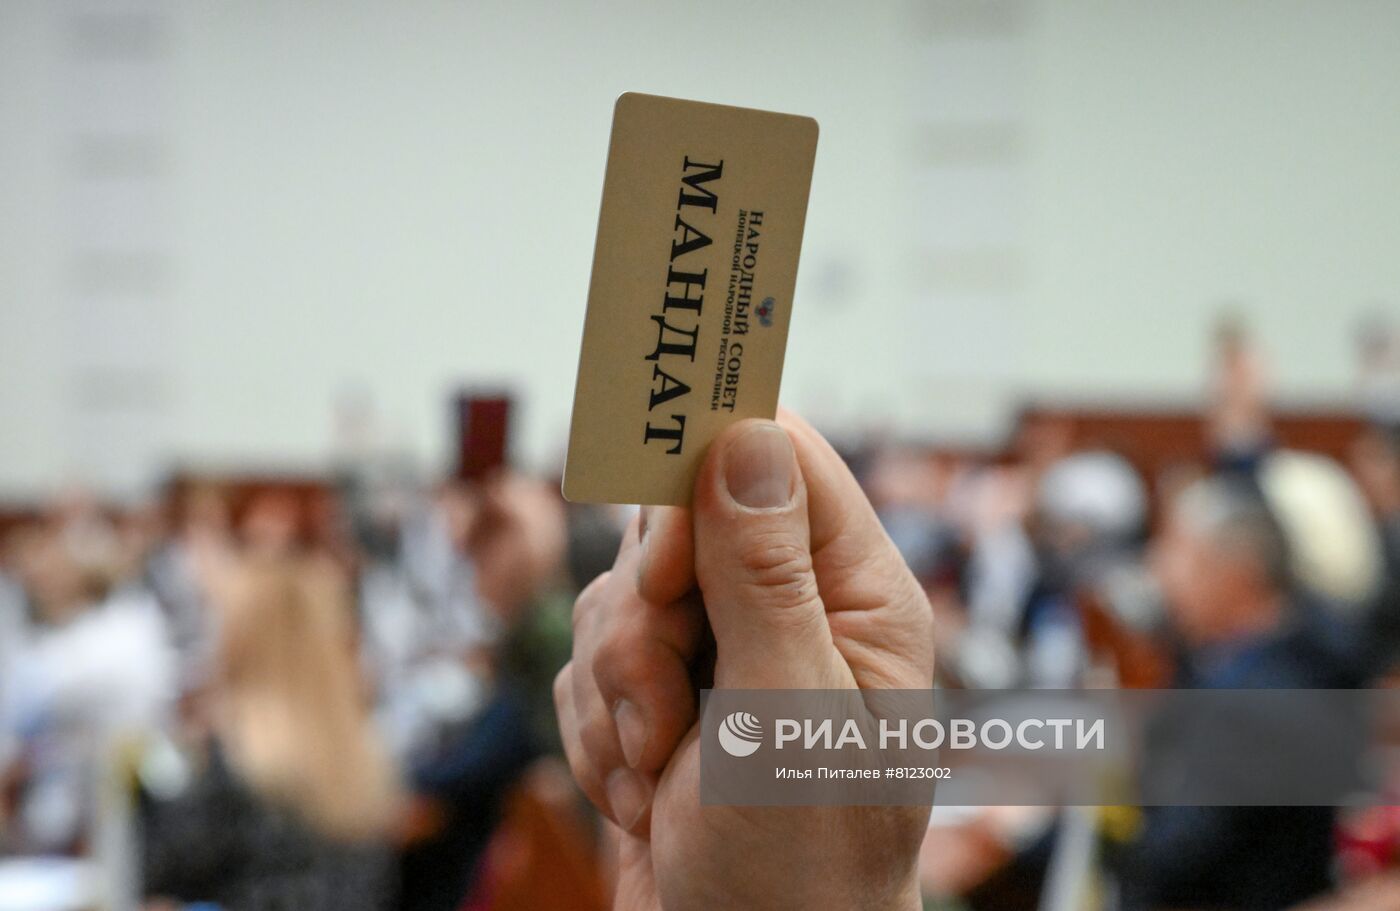 Ратификация парламентом ДНР договора о дружбе с РФ